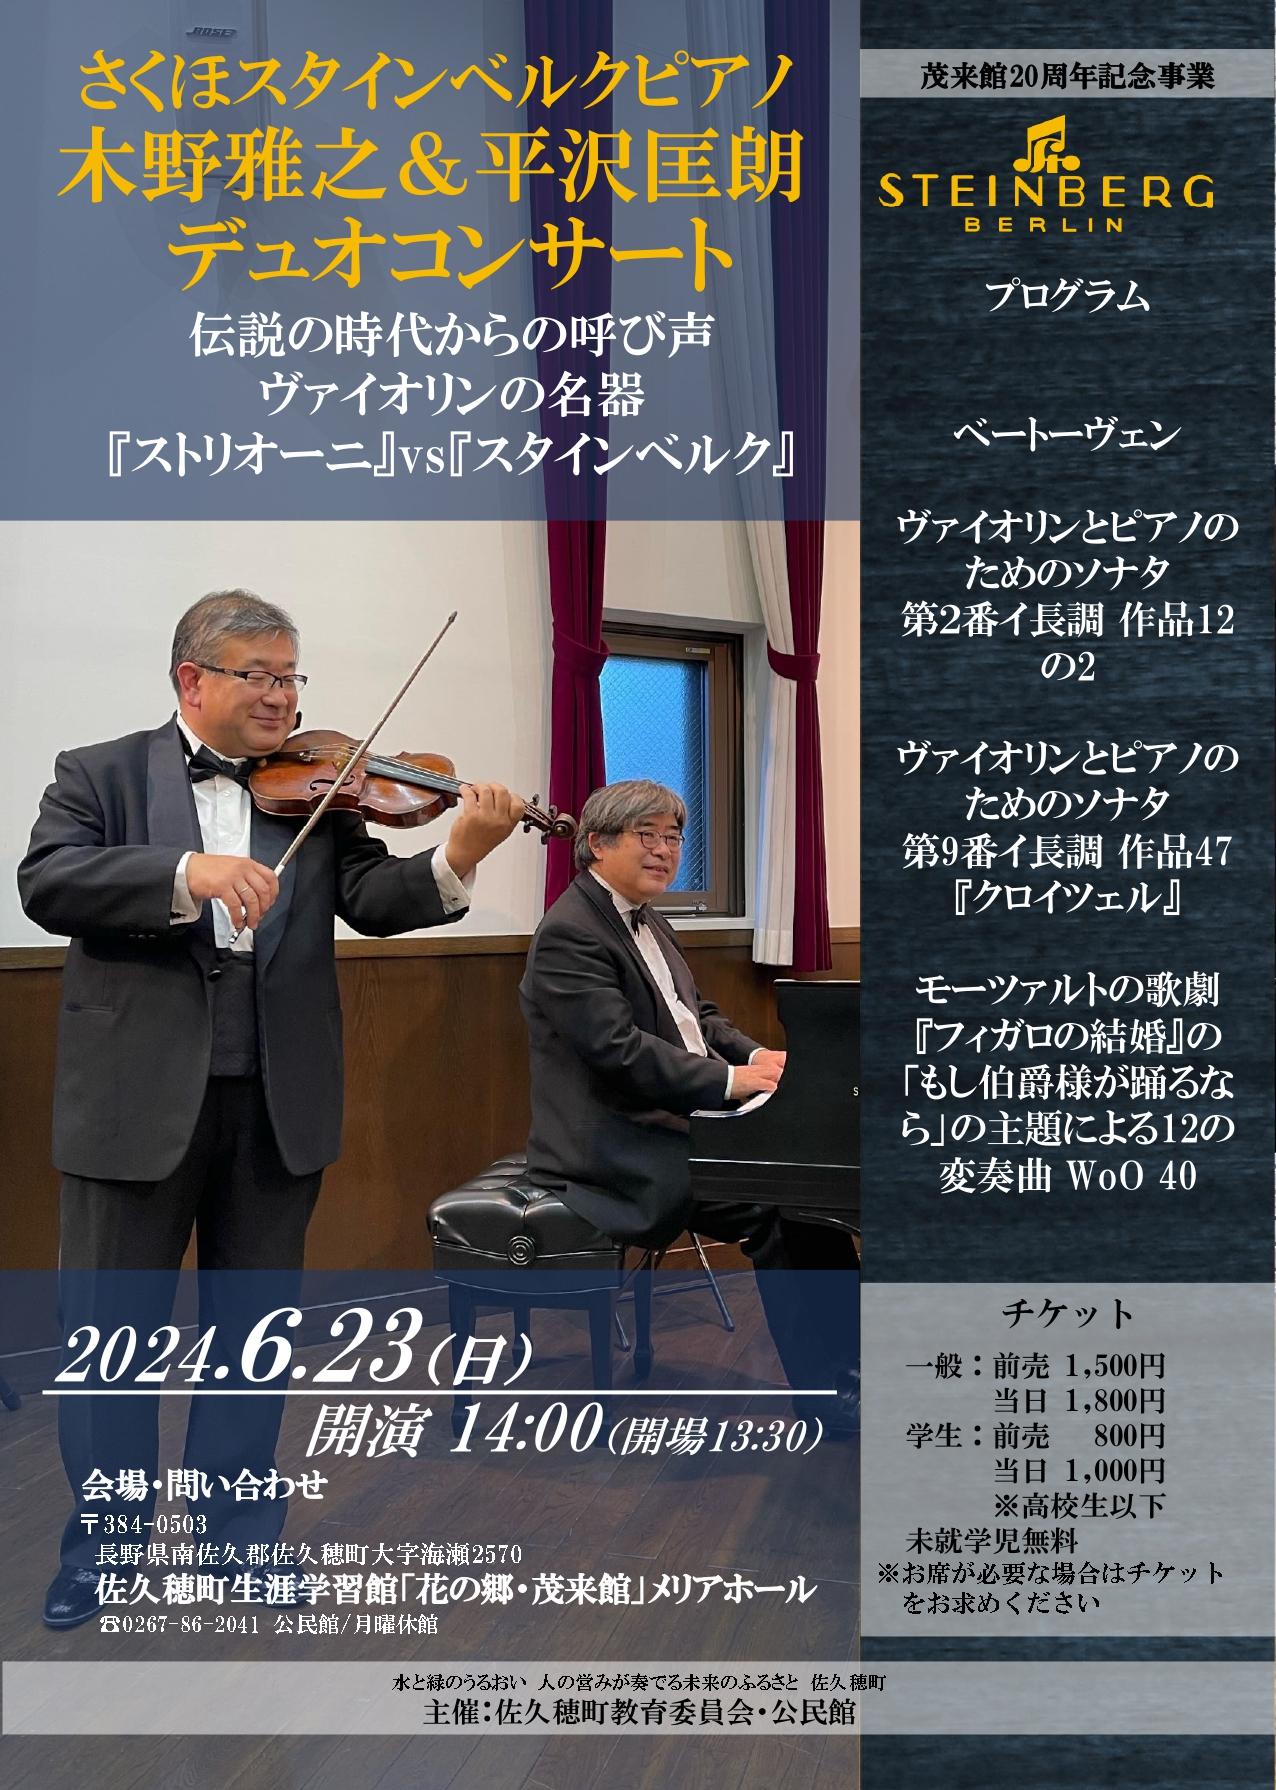 さくほスタインベルクピアノ『木野雅之＆平沢匡朗デュオコンサート』開催のお知らせ